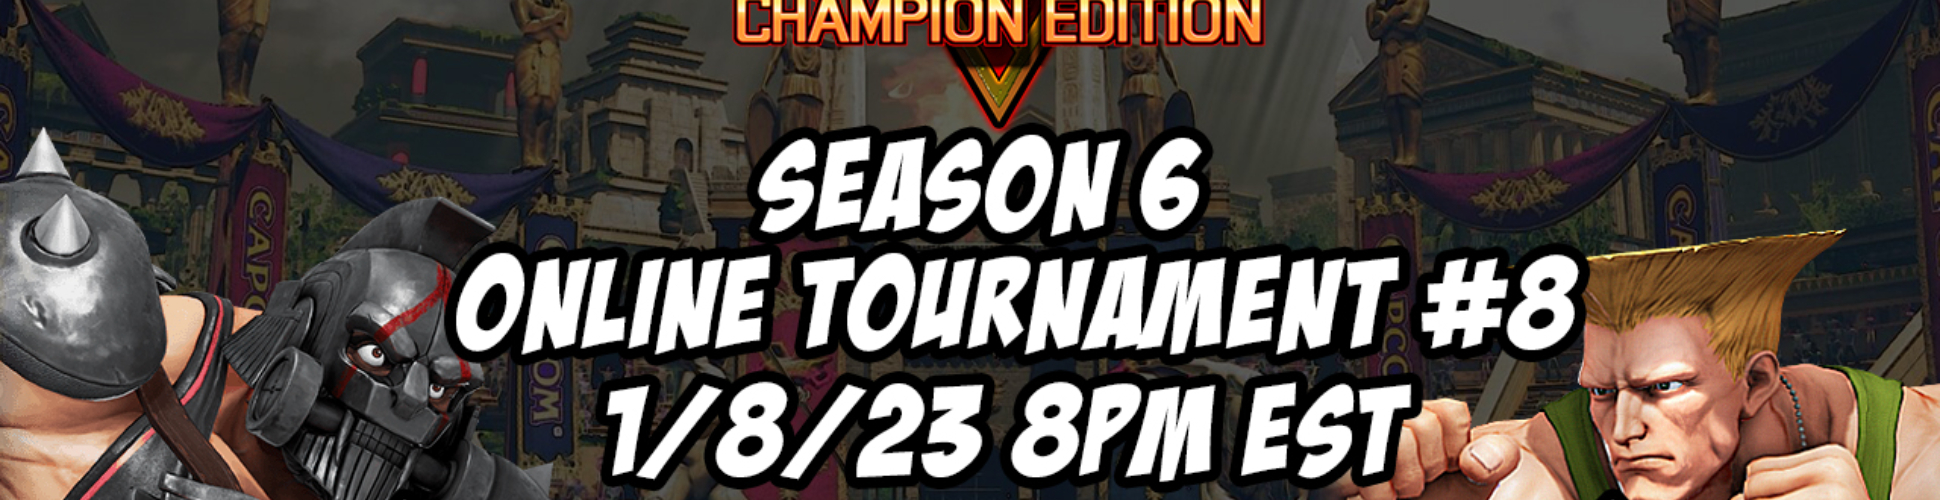 SFV CE Season 6 Online Tournament #8 1/8/23 8pm EST